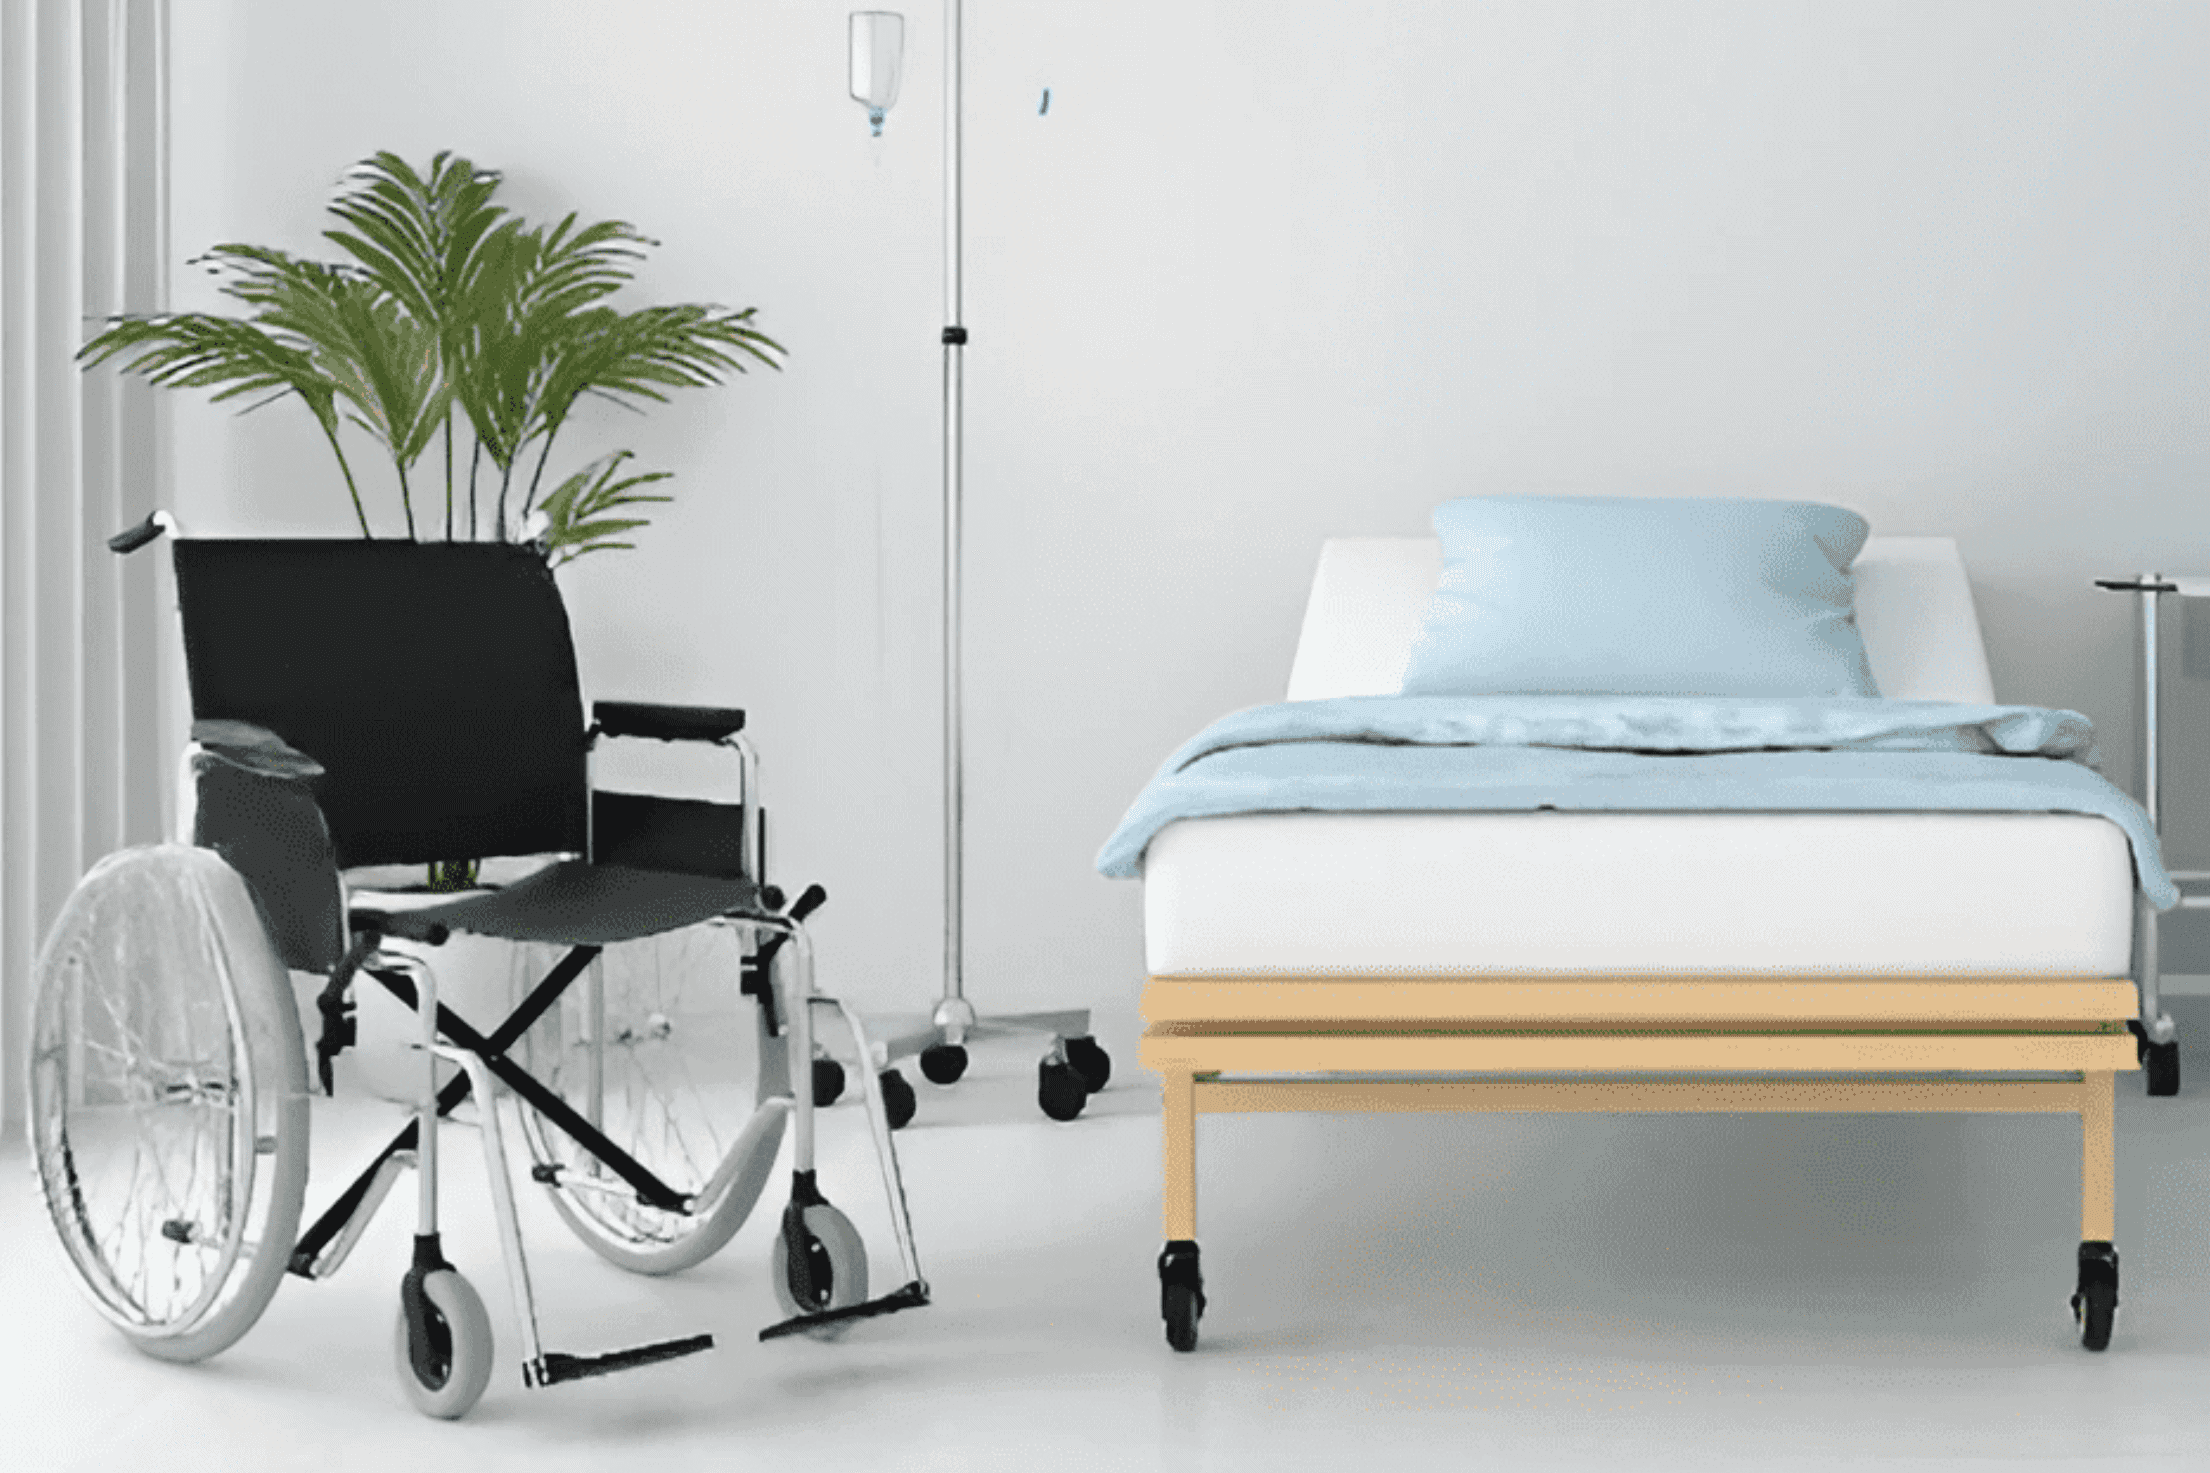 How Do You Get A Hospital Bed Inside Home